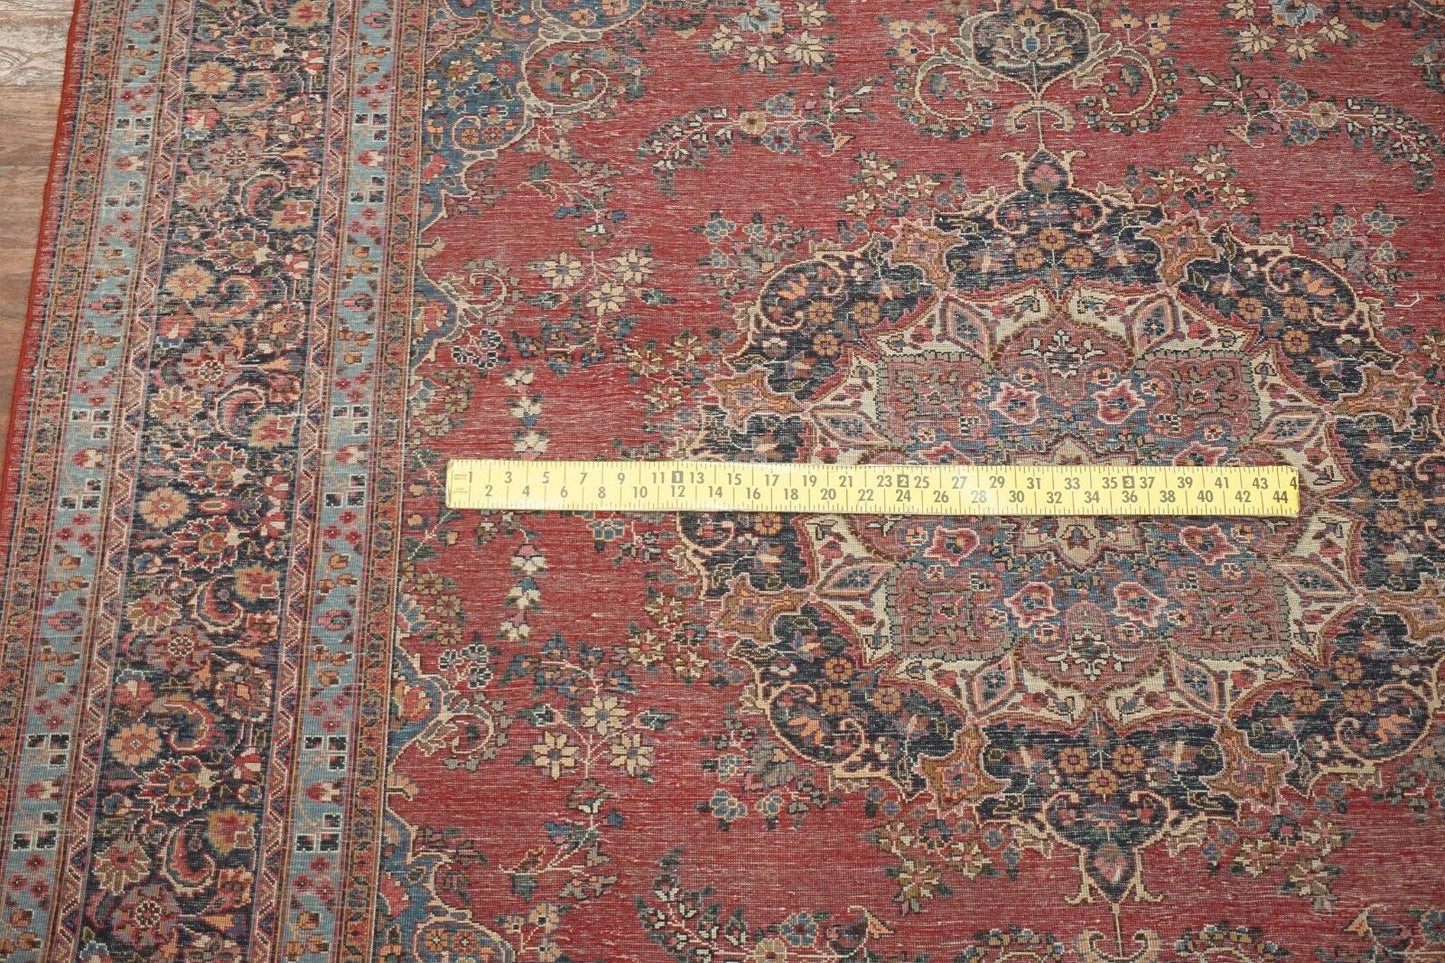 10X13 Vintage Persian Tabriz Rug, circa 1960